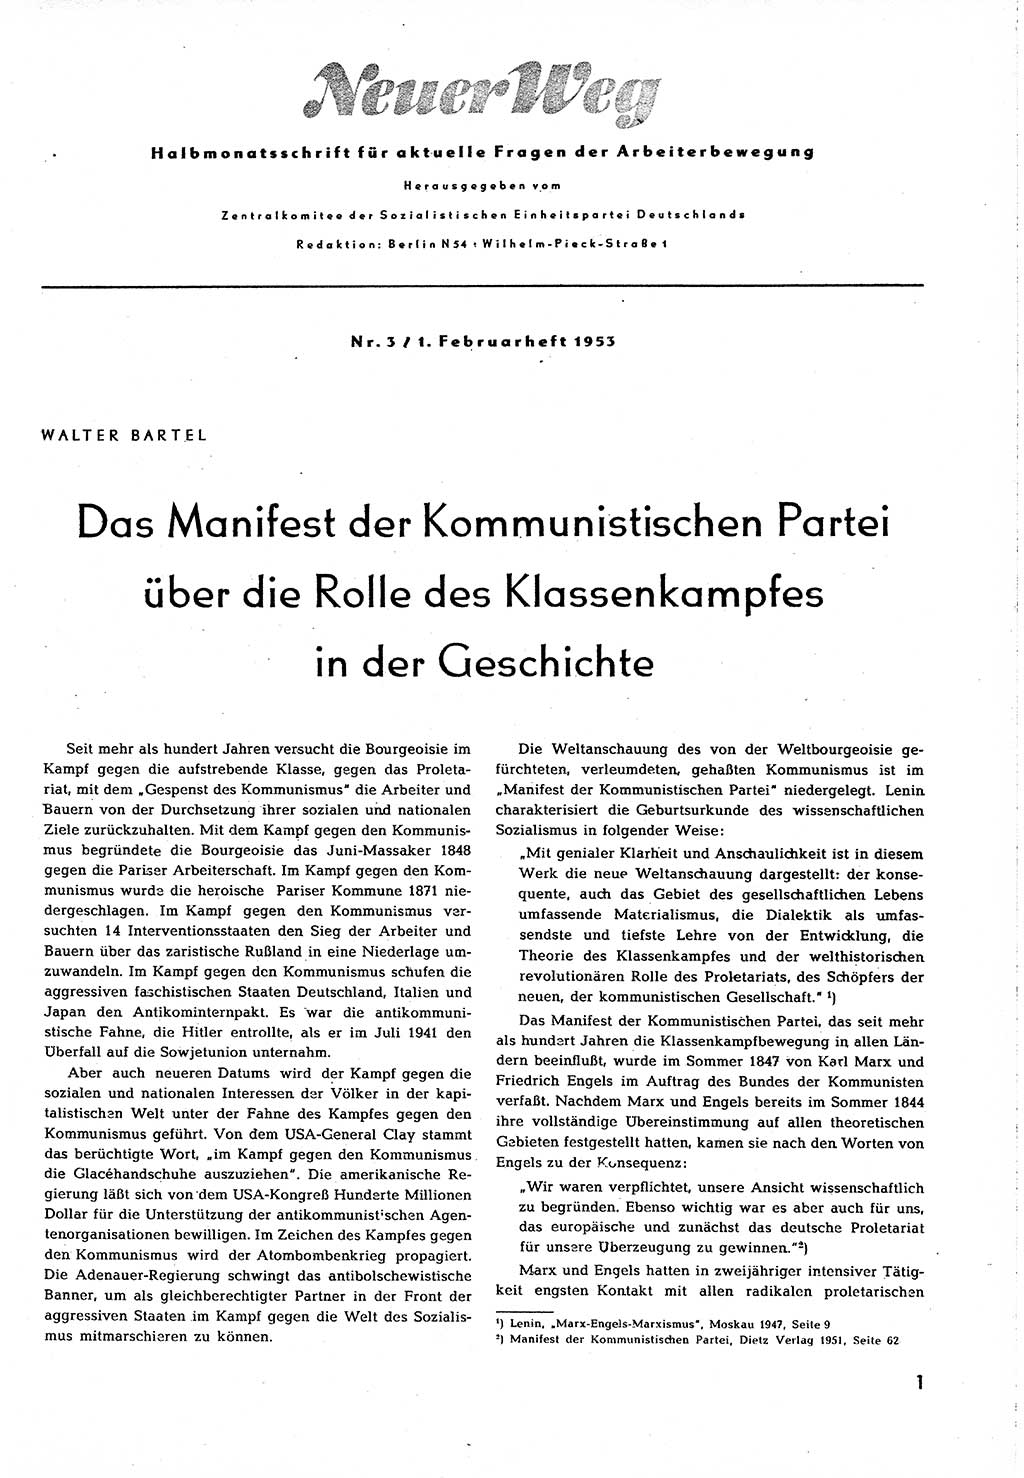 Neuer Weg (NW), Organ des Zentralkomitees (ZK) [Sozialistische Einheitspartei Deutschlands (SED)] für alle Parteiarbeiter, 8. Jahrgang [Deutsche Demokratische Republik (DDR)] 1953, Heft 3/1 (NW ZK SED DDR 1953, H. 3/1)